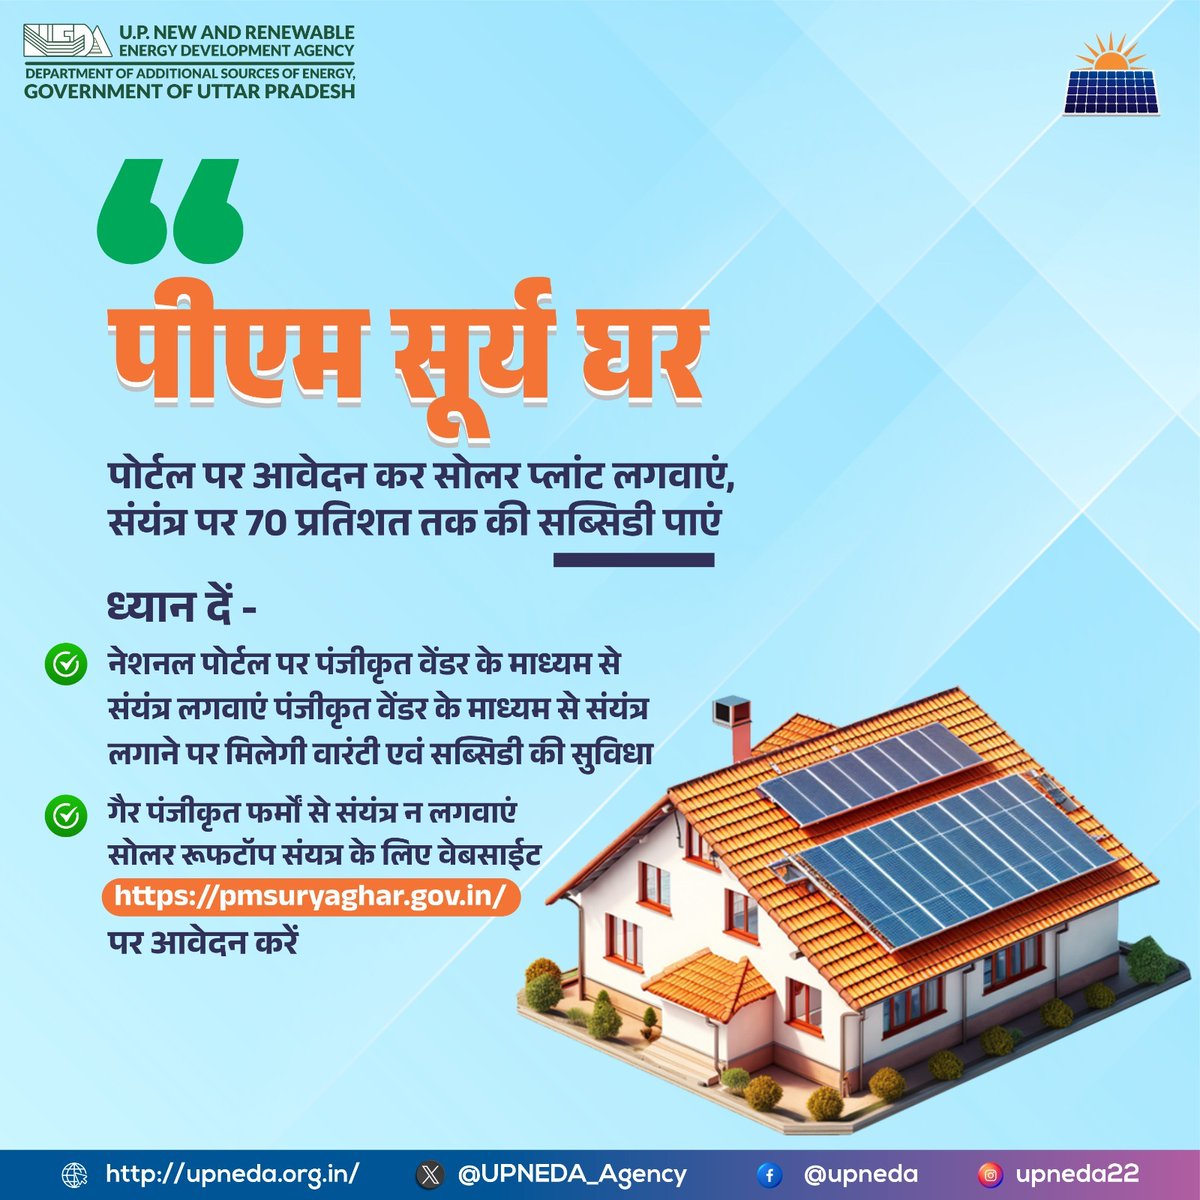 पीएम सूर्य घर के पोर्टल पर आवेदन कर सोलर पैनल लगवाएं और भारी बिजली बिलों से छुटकारा पाएं। साथ ही सोलर पैनल पर मिल रही 70% तक की सब्सिडी का लाभ उठाएं । 
अधिक जानकारी के लिए pmsuryaghar.gov.in पर जाएं । 

#सौरऊर्जा #यूपीनेडा #रूफटॉप_सोलर #सौर_ऊर्जा #SolarEnergy #SolarPower